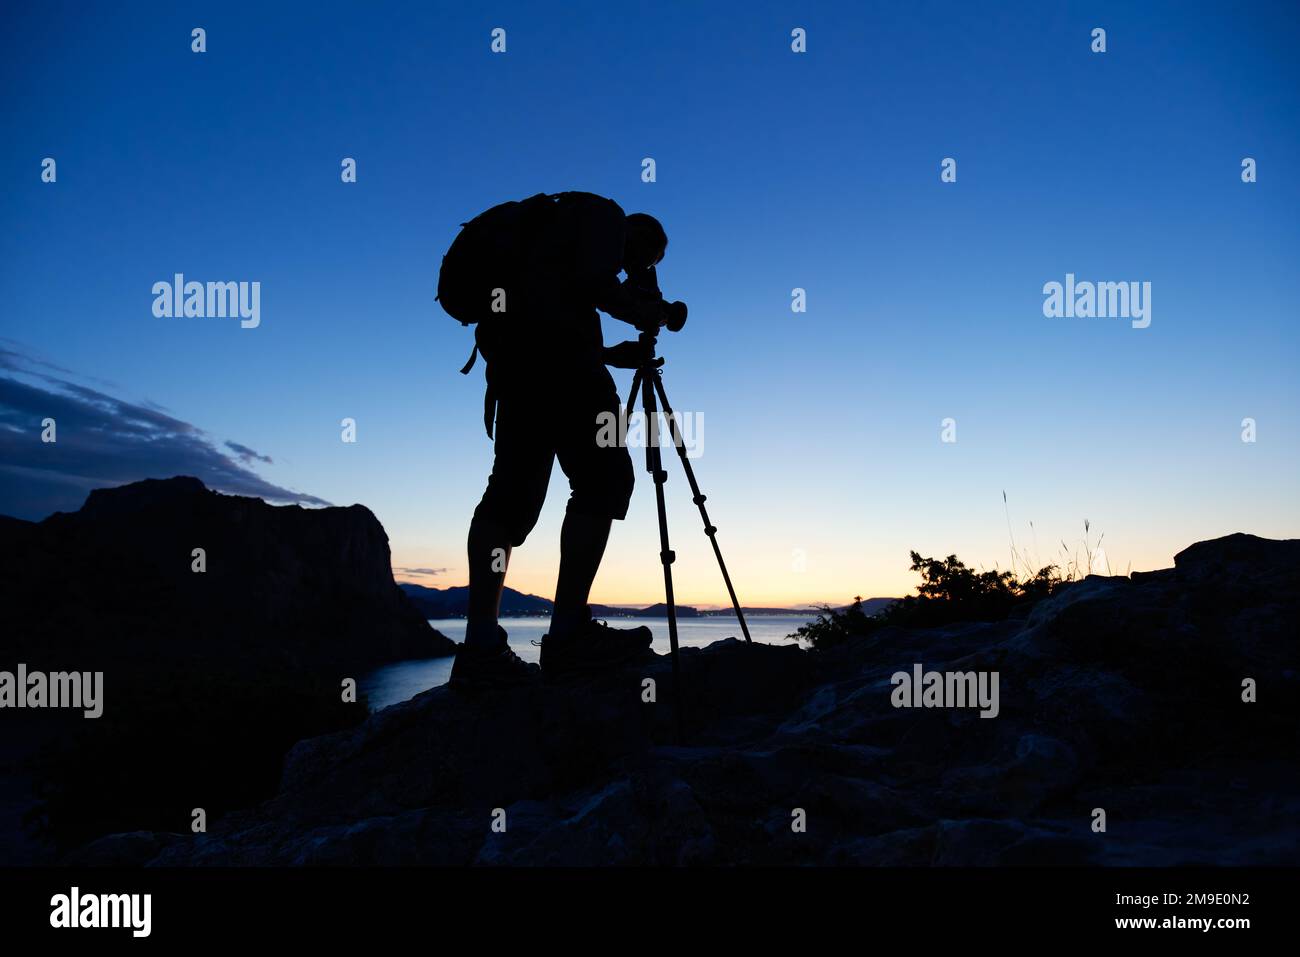 Silhouette de photographe au sommet de la montagne, sur fond de coucher de soleil. Photographe de la nature en action. Filmer la photographie analogique Banque D'Images